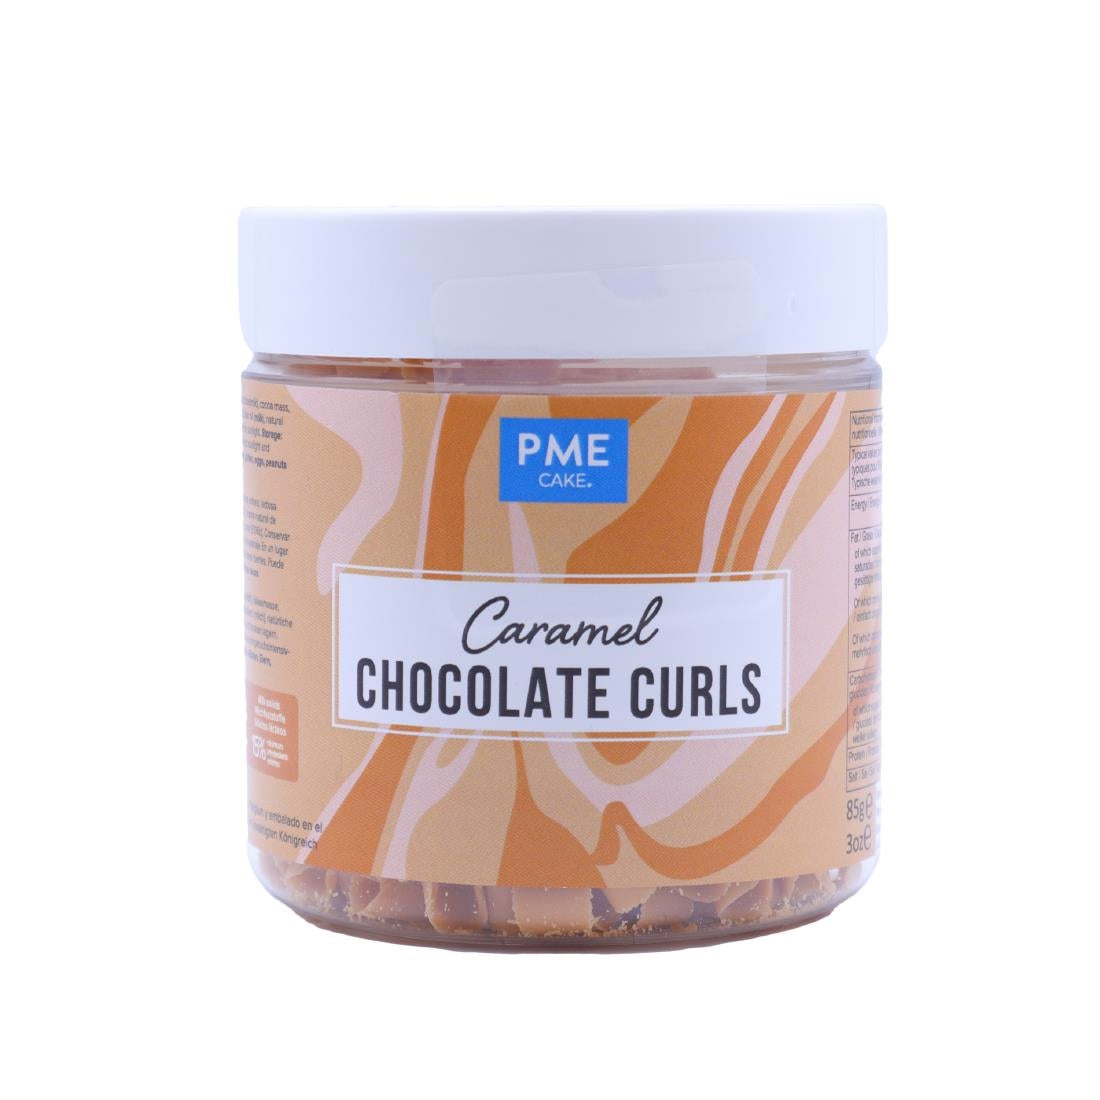 HU285 PME Chocolate Curls Caramel 85g